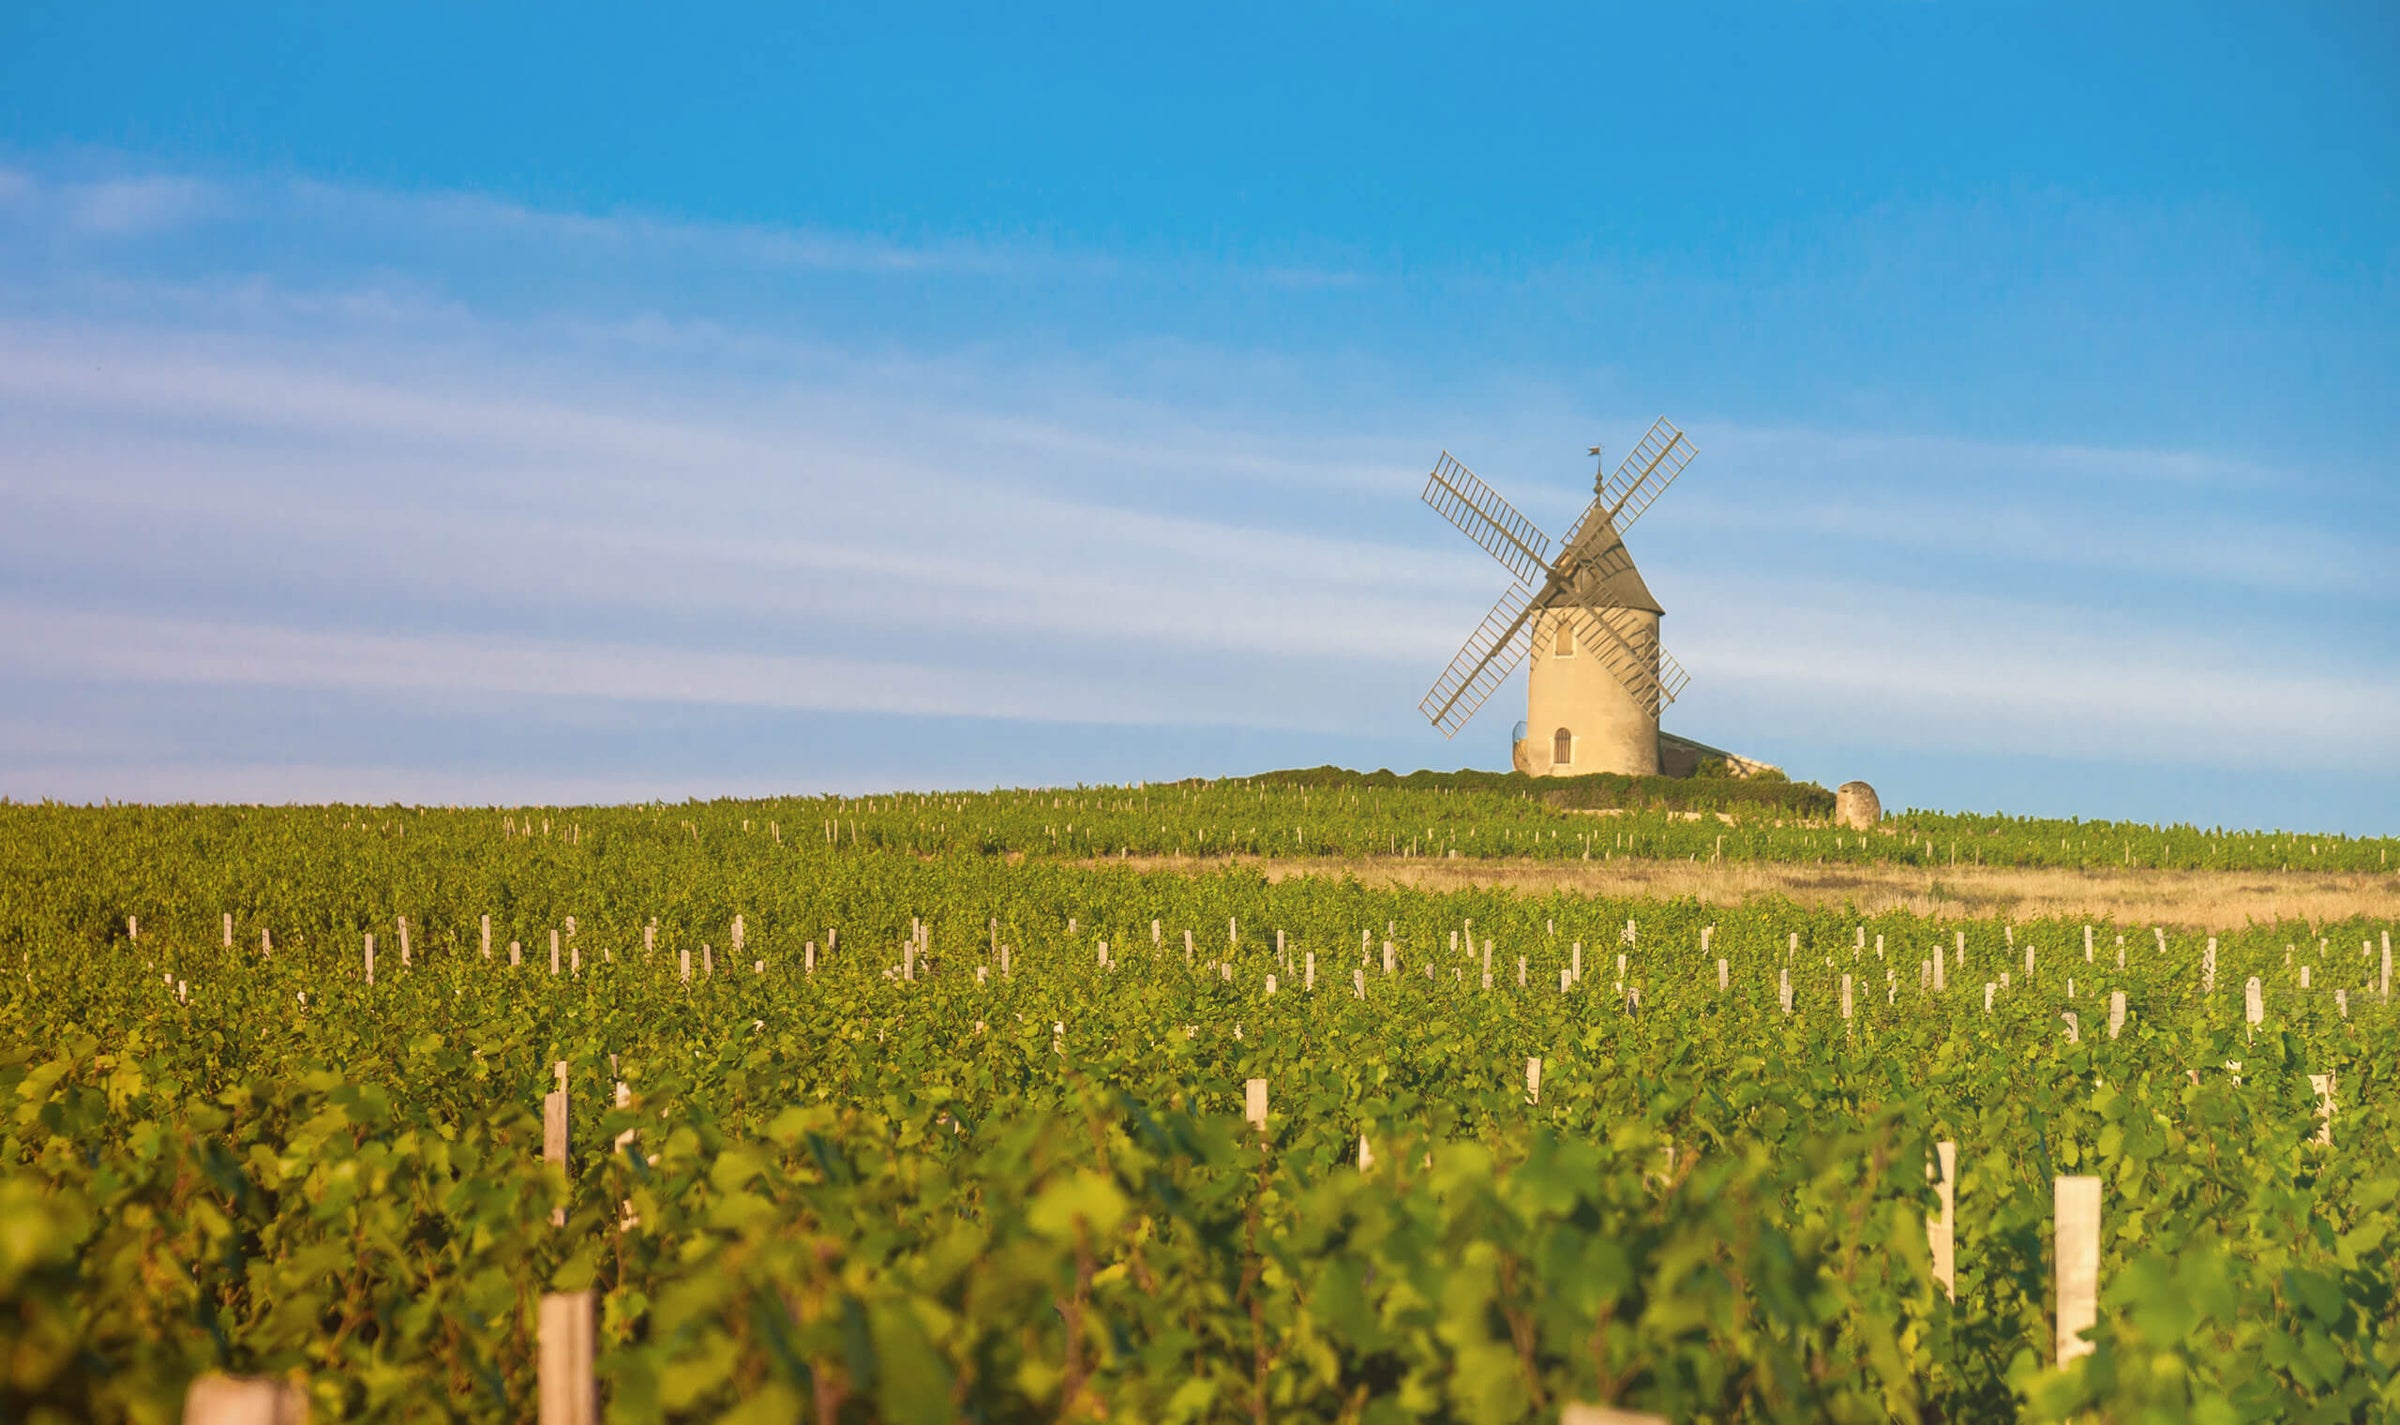 Beaujolais, moulin-a-vent. Passie voor duurzame wijn en bio wijn. Duurzame bio producent, bio wijn biologische wijn. Duurzame wijnen, onze best verkopende selectie. Biologische bio wijn. Met een passie voor duurzame wijn.